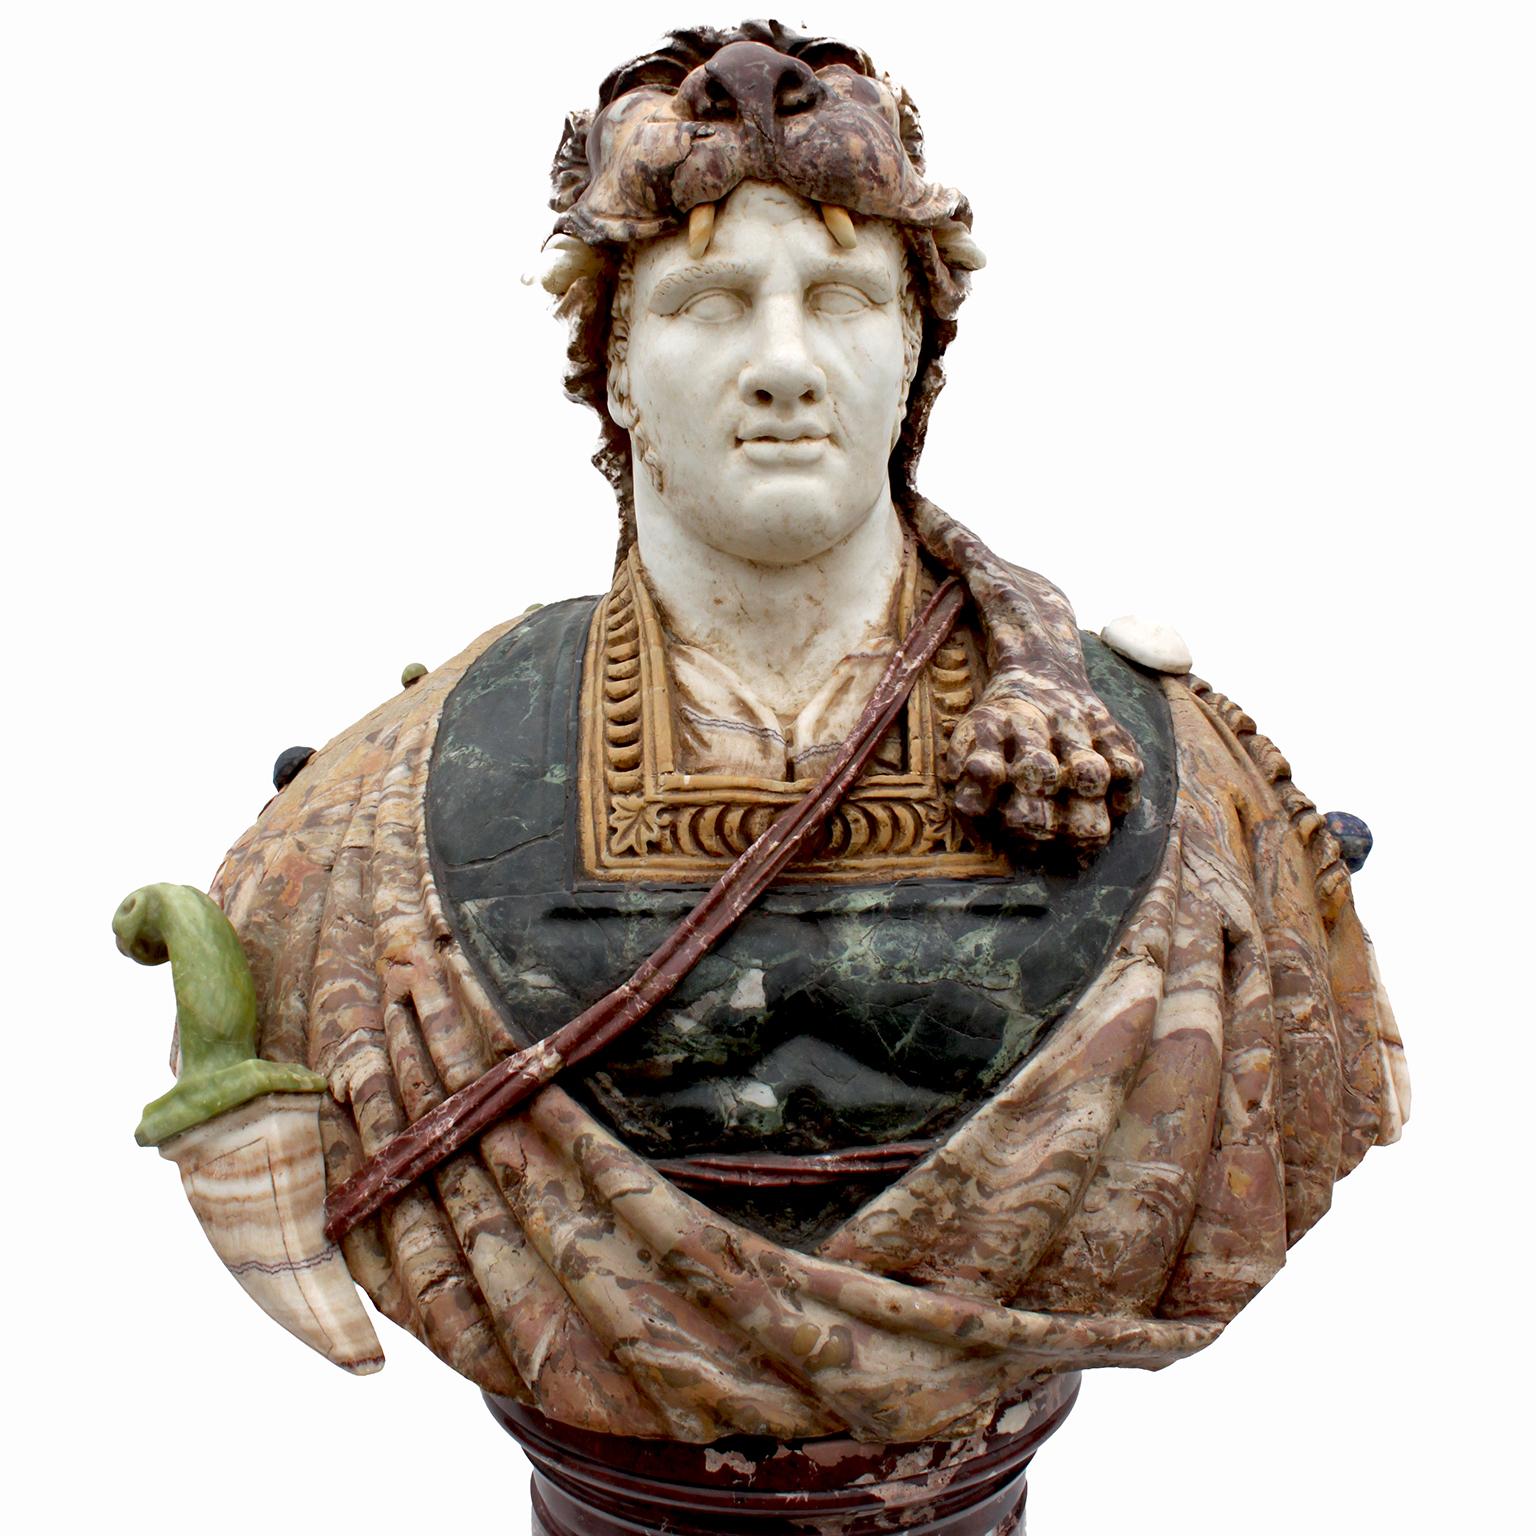 Très beau et impressionnant buste en marbre italien du début du 20e siècle représentant un guerrier gréco-romain, probablement Hercule, d'après l'antique. Le grand buste magnifiquement sculpté et décoré d'un guerrier masculin, représenté avec une